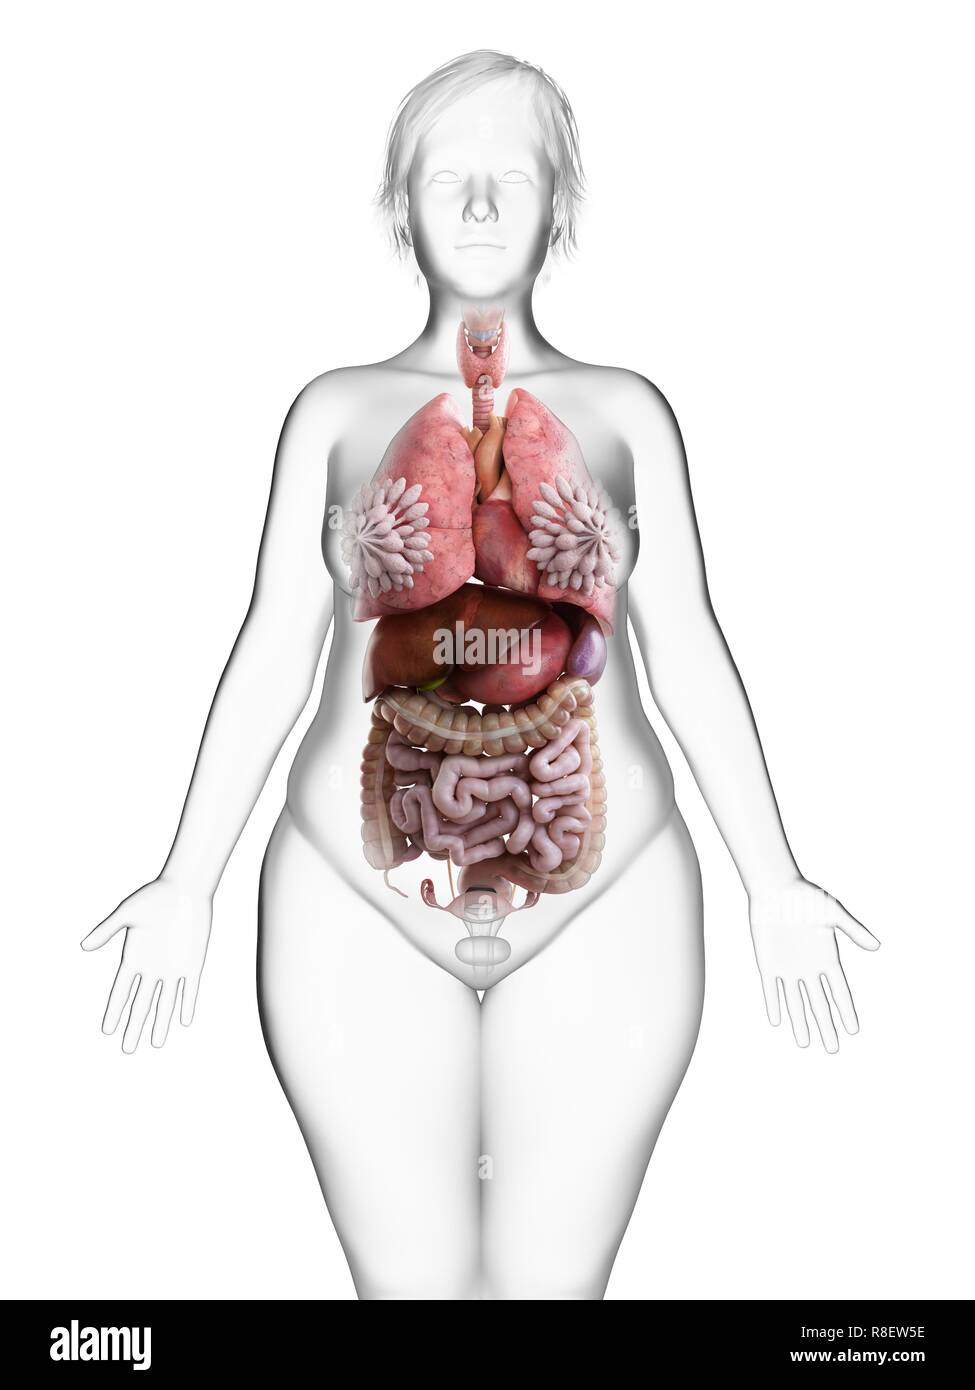 Внутренние органы женщины картинка. Анатомия женского тела. Внутренний организм женщины. Анатомия женщины органы. Внутренние женские органы анатомия.